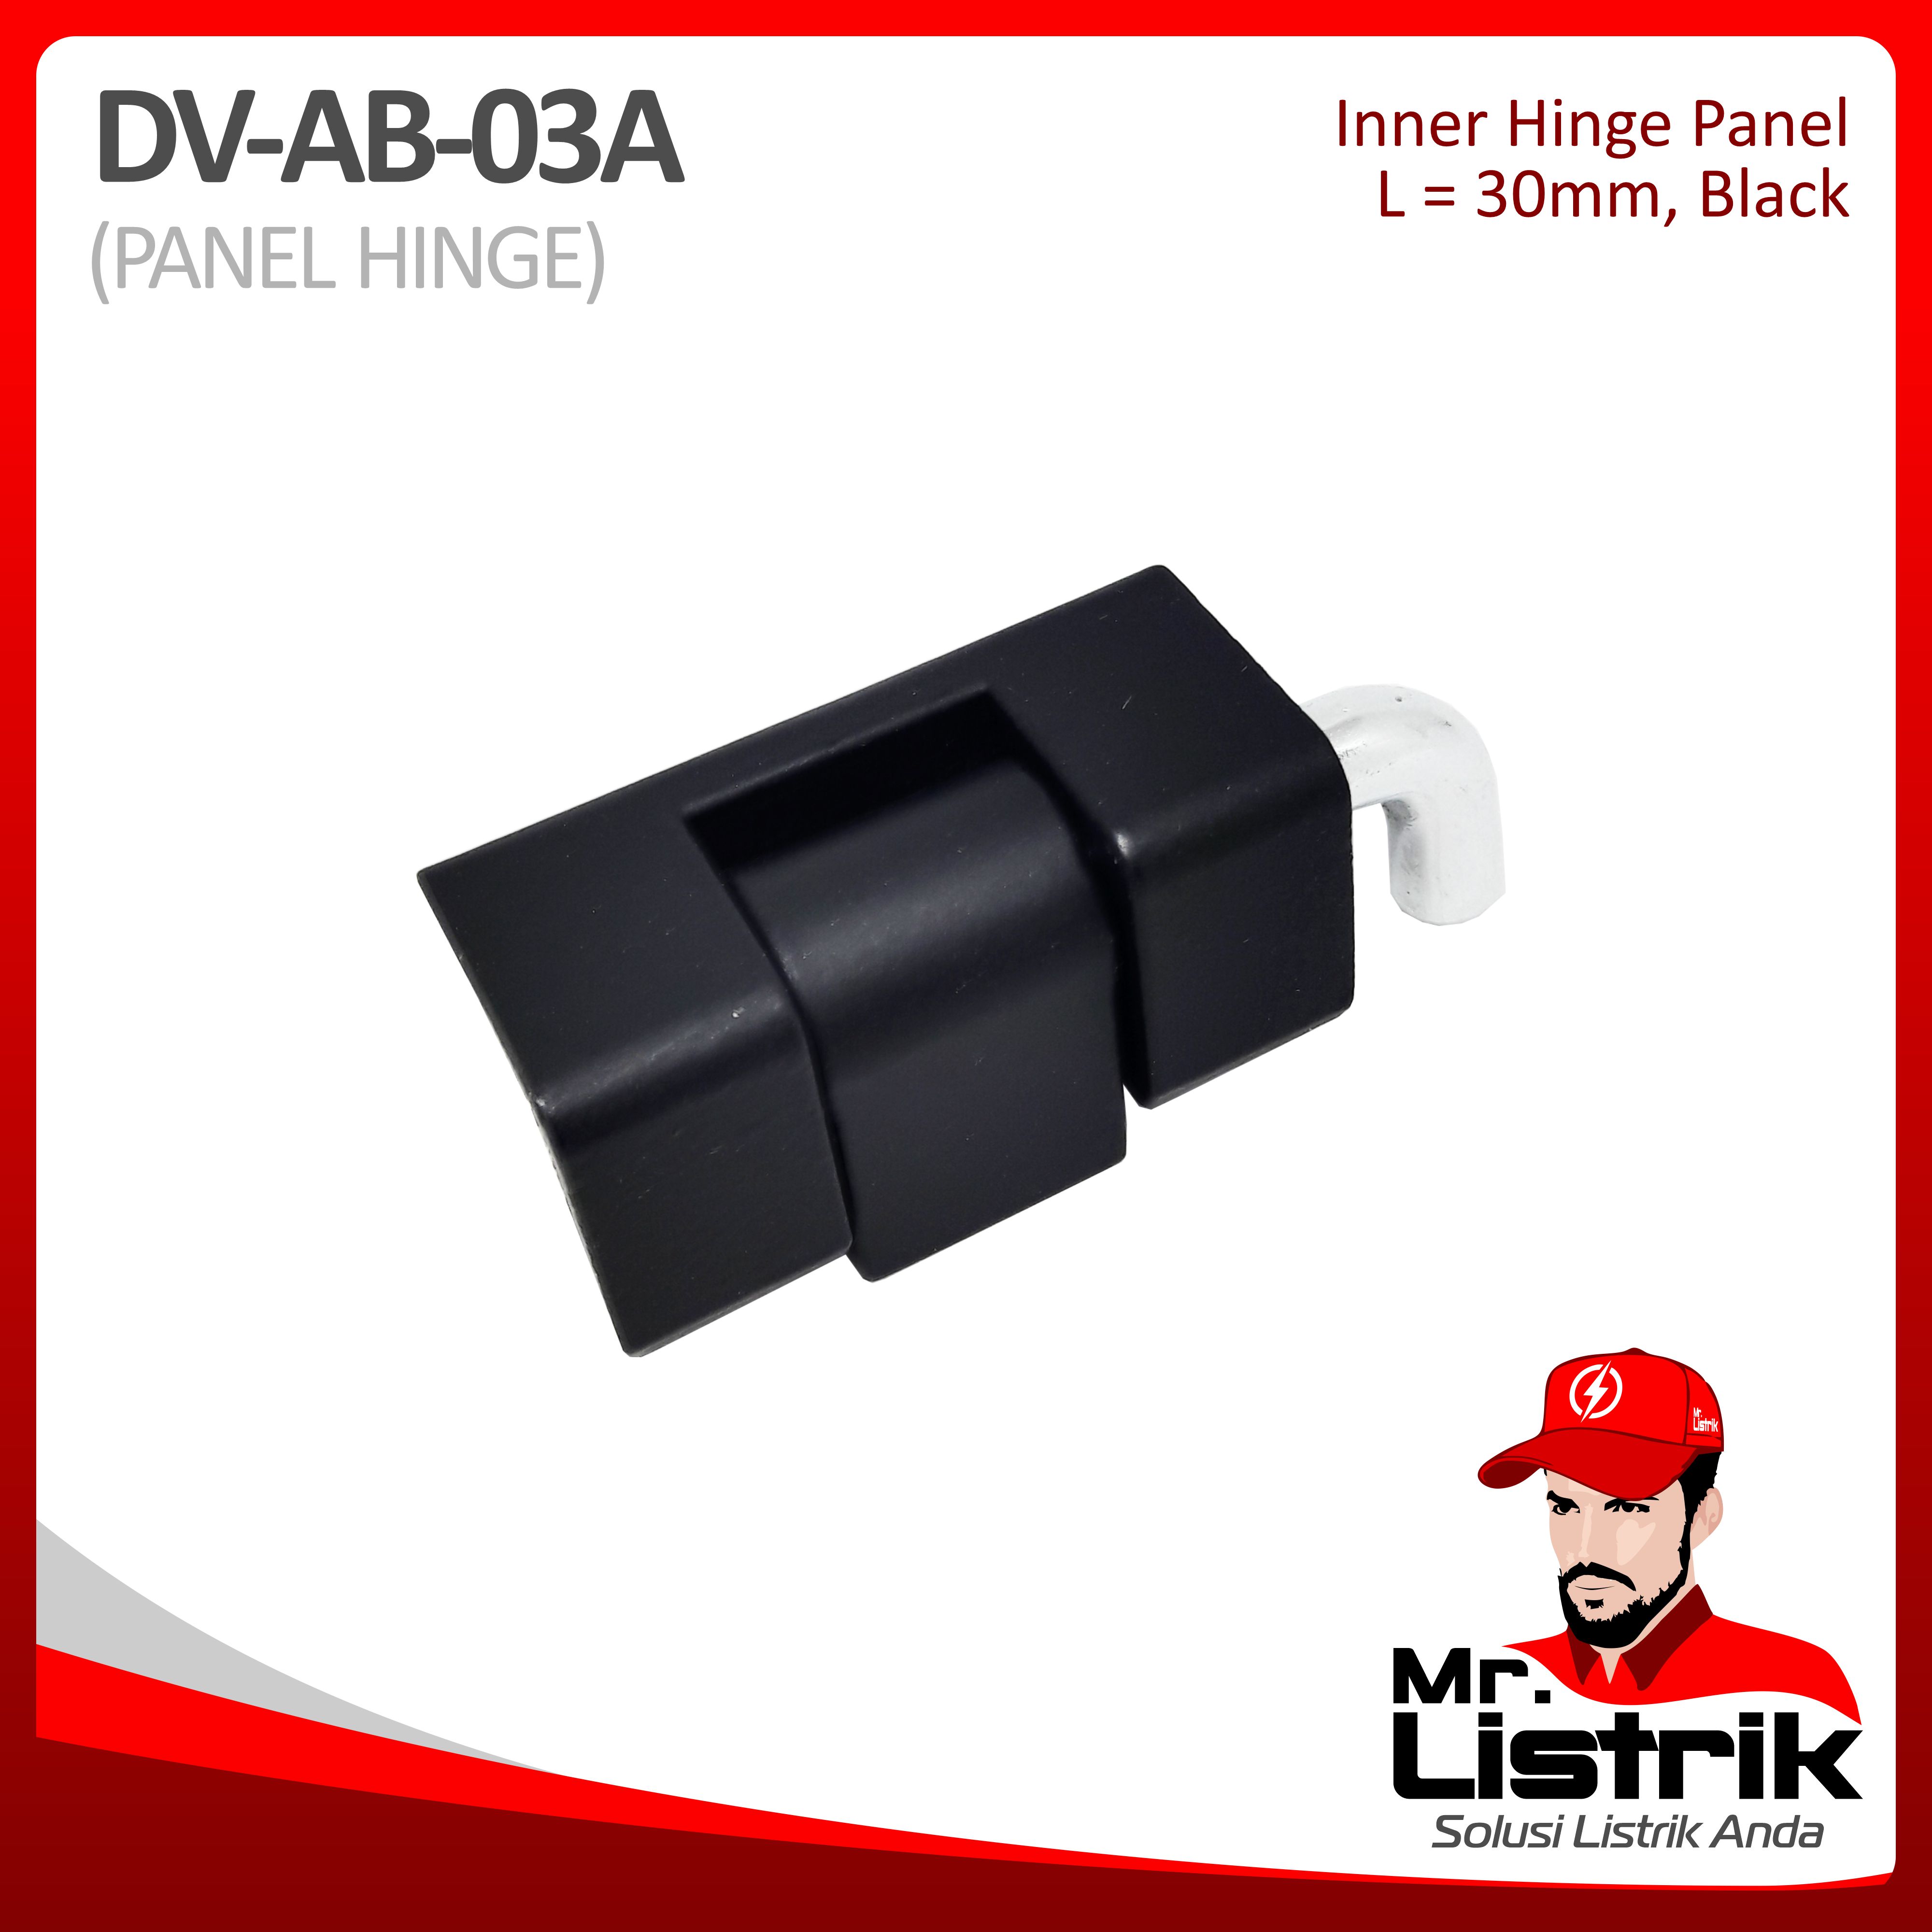 Inner Hinge Panel 30mm Black DV AB-03A